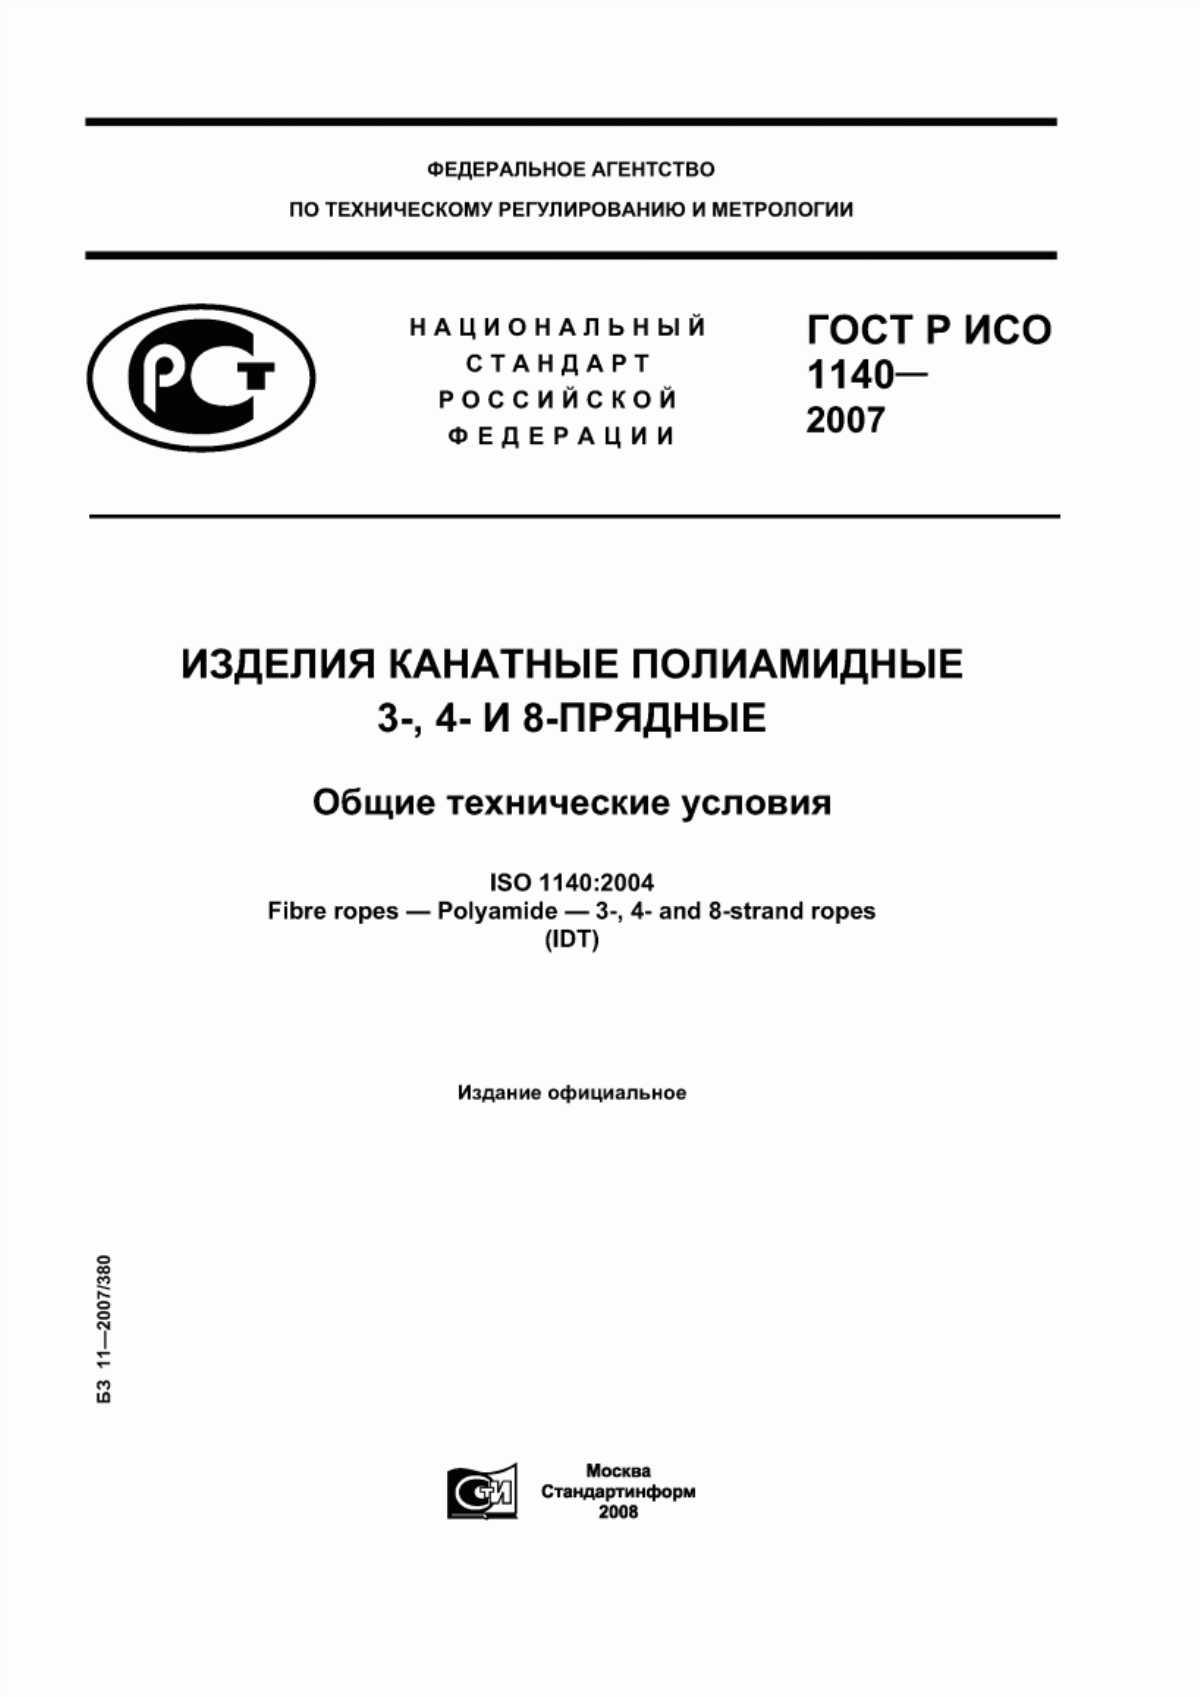 ГОСТ Р ИСО 1140-2007 Изделия канатные полиамидные 3-, 4- и 8-прядные. Общие технические условия